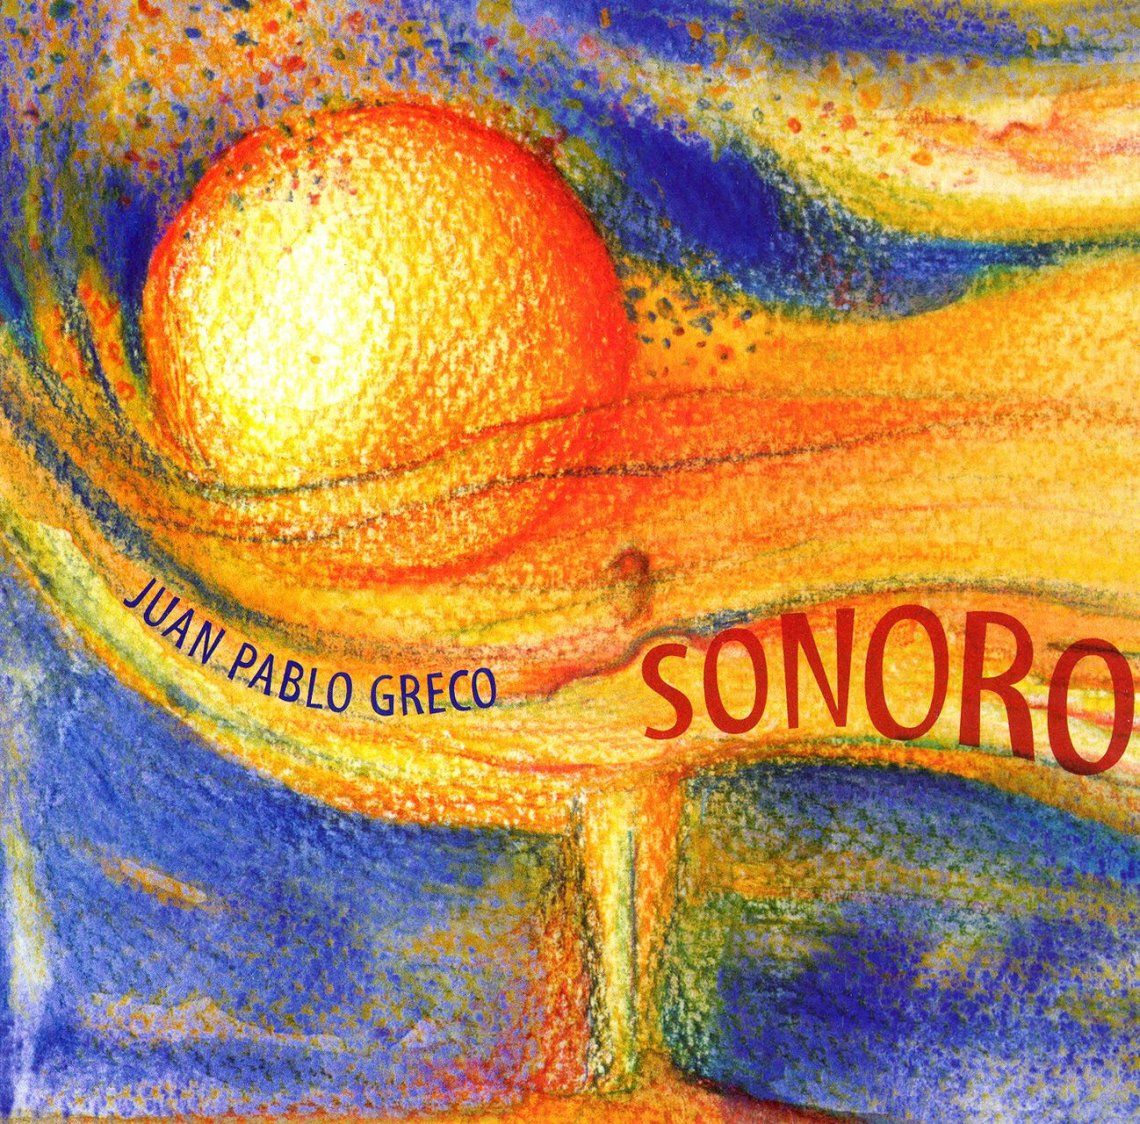 Sonoro, de Juan Pablo Greco